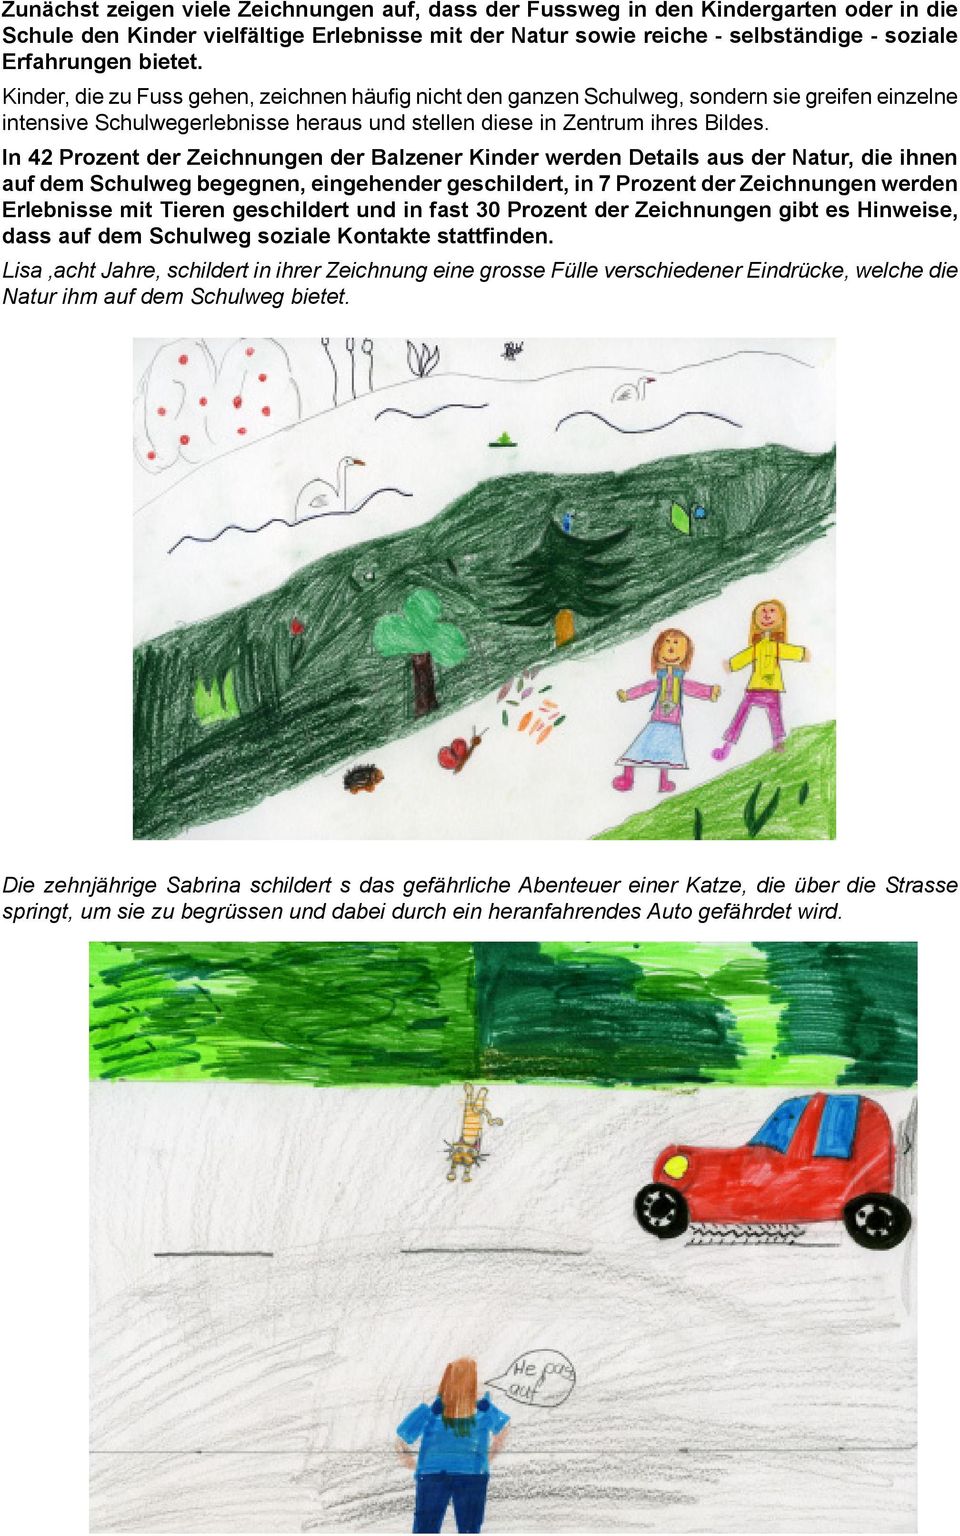 In 42 Prozent der Zeichnungen der Balzener Kinder werden Details aus der Natur, die ihnen auf dem Schulweg begegnen, eingehender geschildert, in 7 Prozent der Zeichnungen werden Erlebnisse mit Tieren